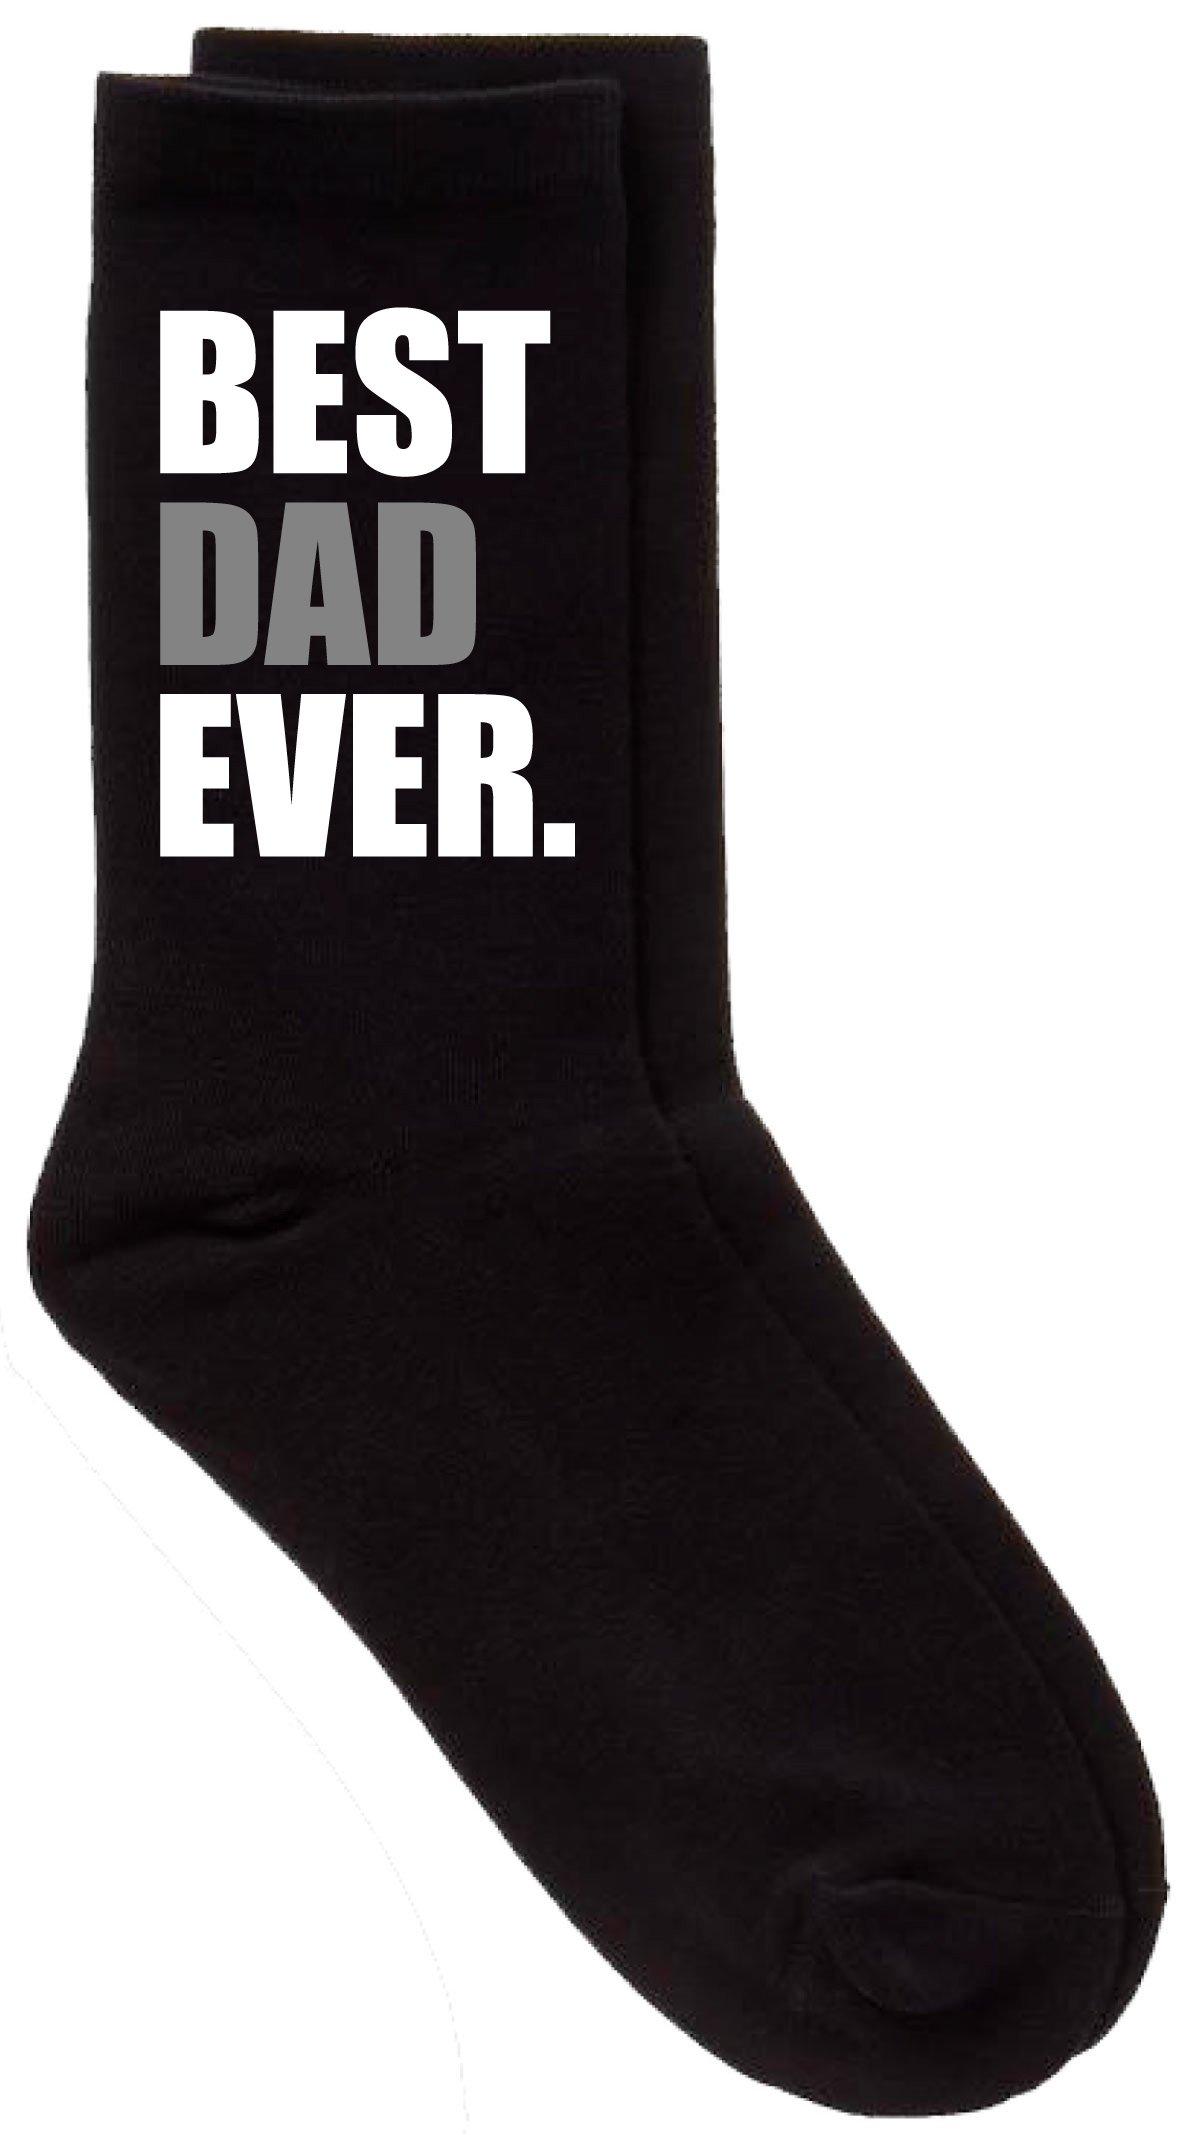 черные носки best dad ever v2 60 second makeover черный Черные носки Best Dad Ever V2 60 SECOND MAKEOVER, черный